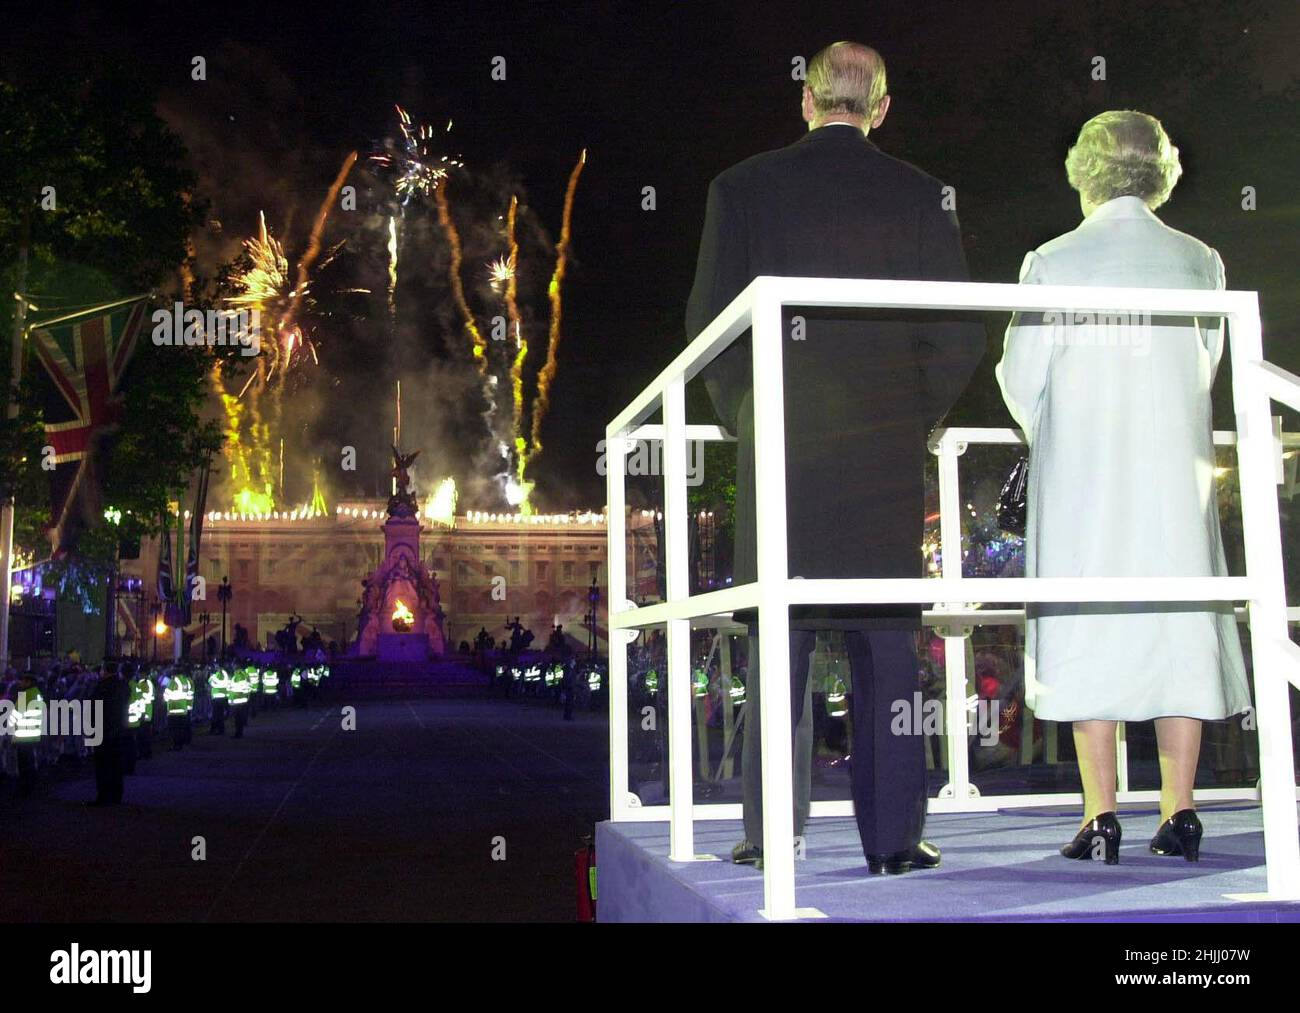 Foto di archivio datata 3/6/2002 della Regina Elisabetta II e del Duca di Edimburgo, osservando i fuochi d'artificio scoppiati sopra Buckingham Palace a Londra, dopo che la Regina illuminò un faro per commemorare il suo Giubileo d'Oro. Data di emissione: Domenica 30 gennaio 2022. Foto Stock